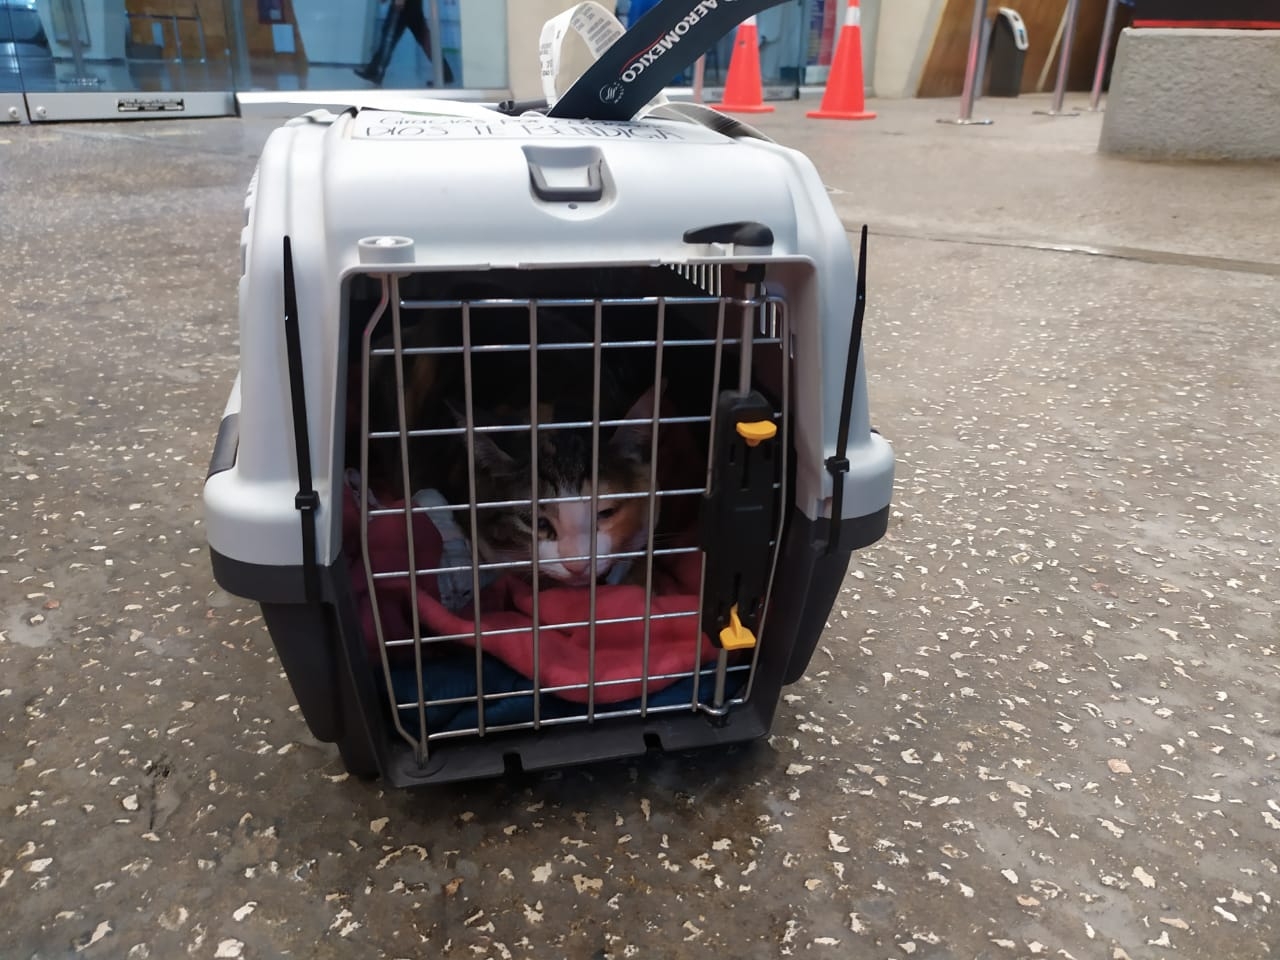 Mascotas viajan en el maletero del avión por más de ocho horas en Ciudad del Carmen